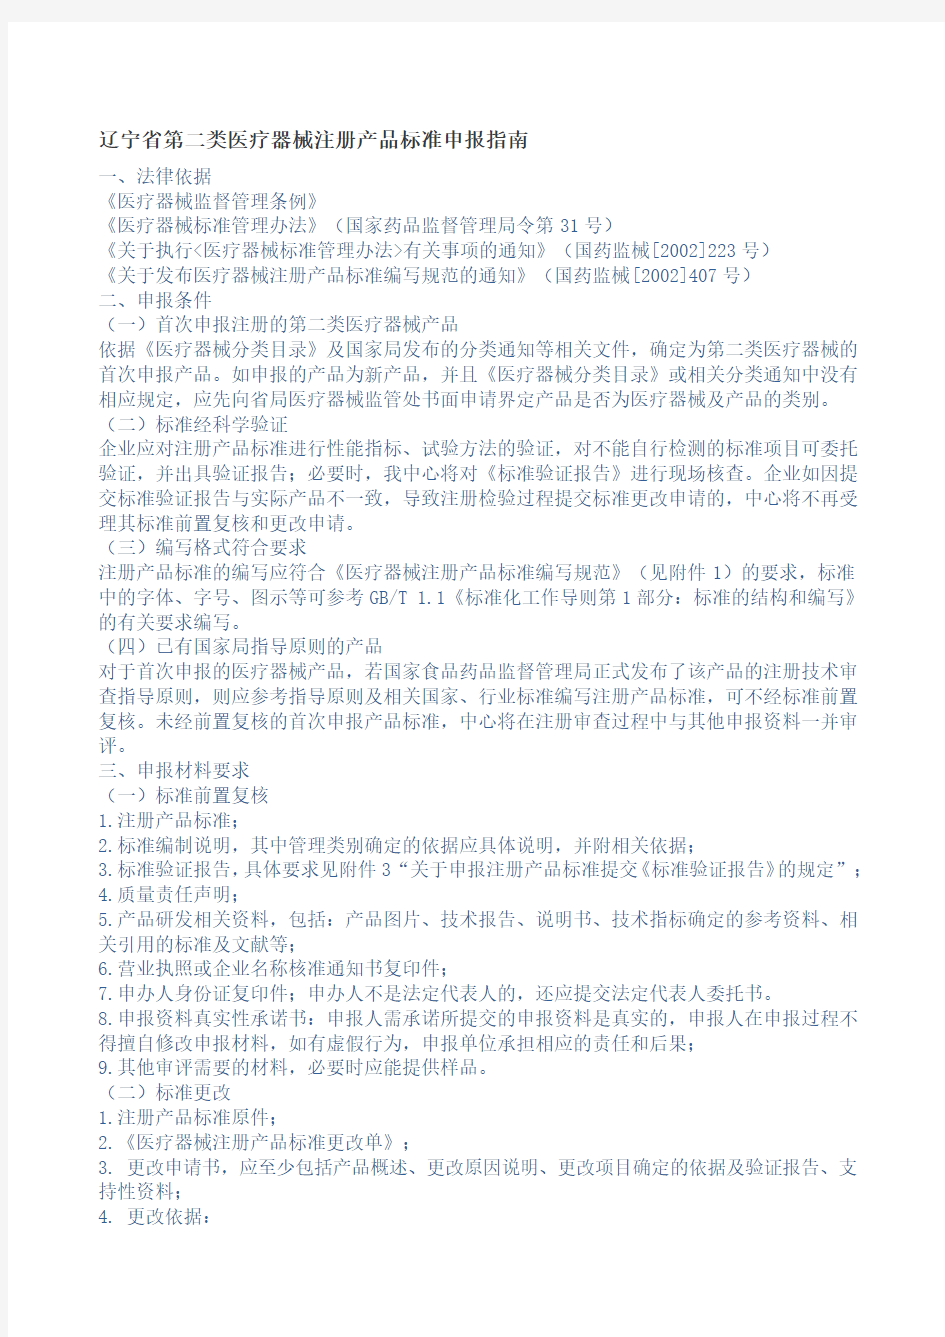 辽宁省第二类医疗器械注册产品标准申报指南